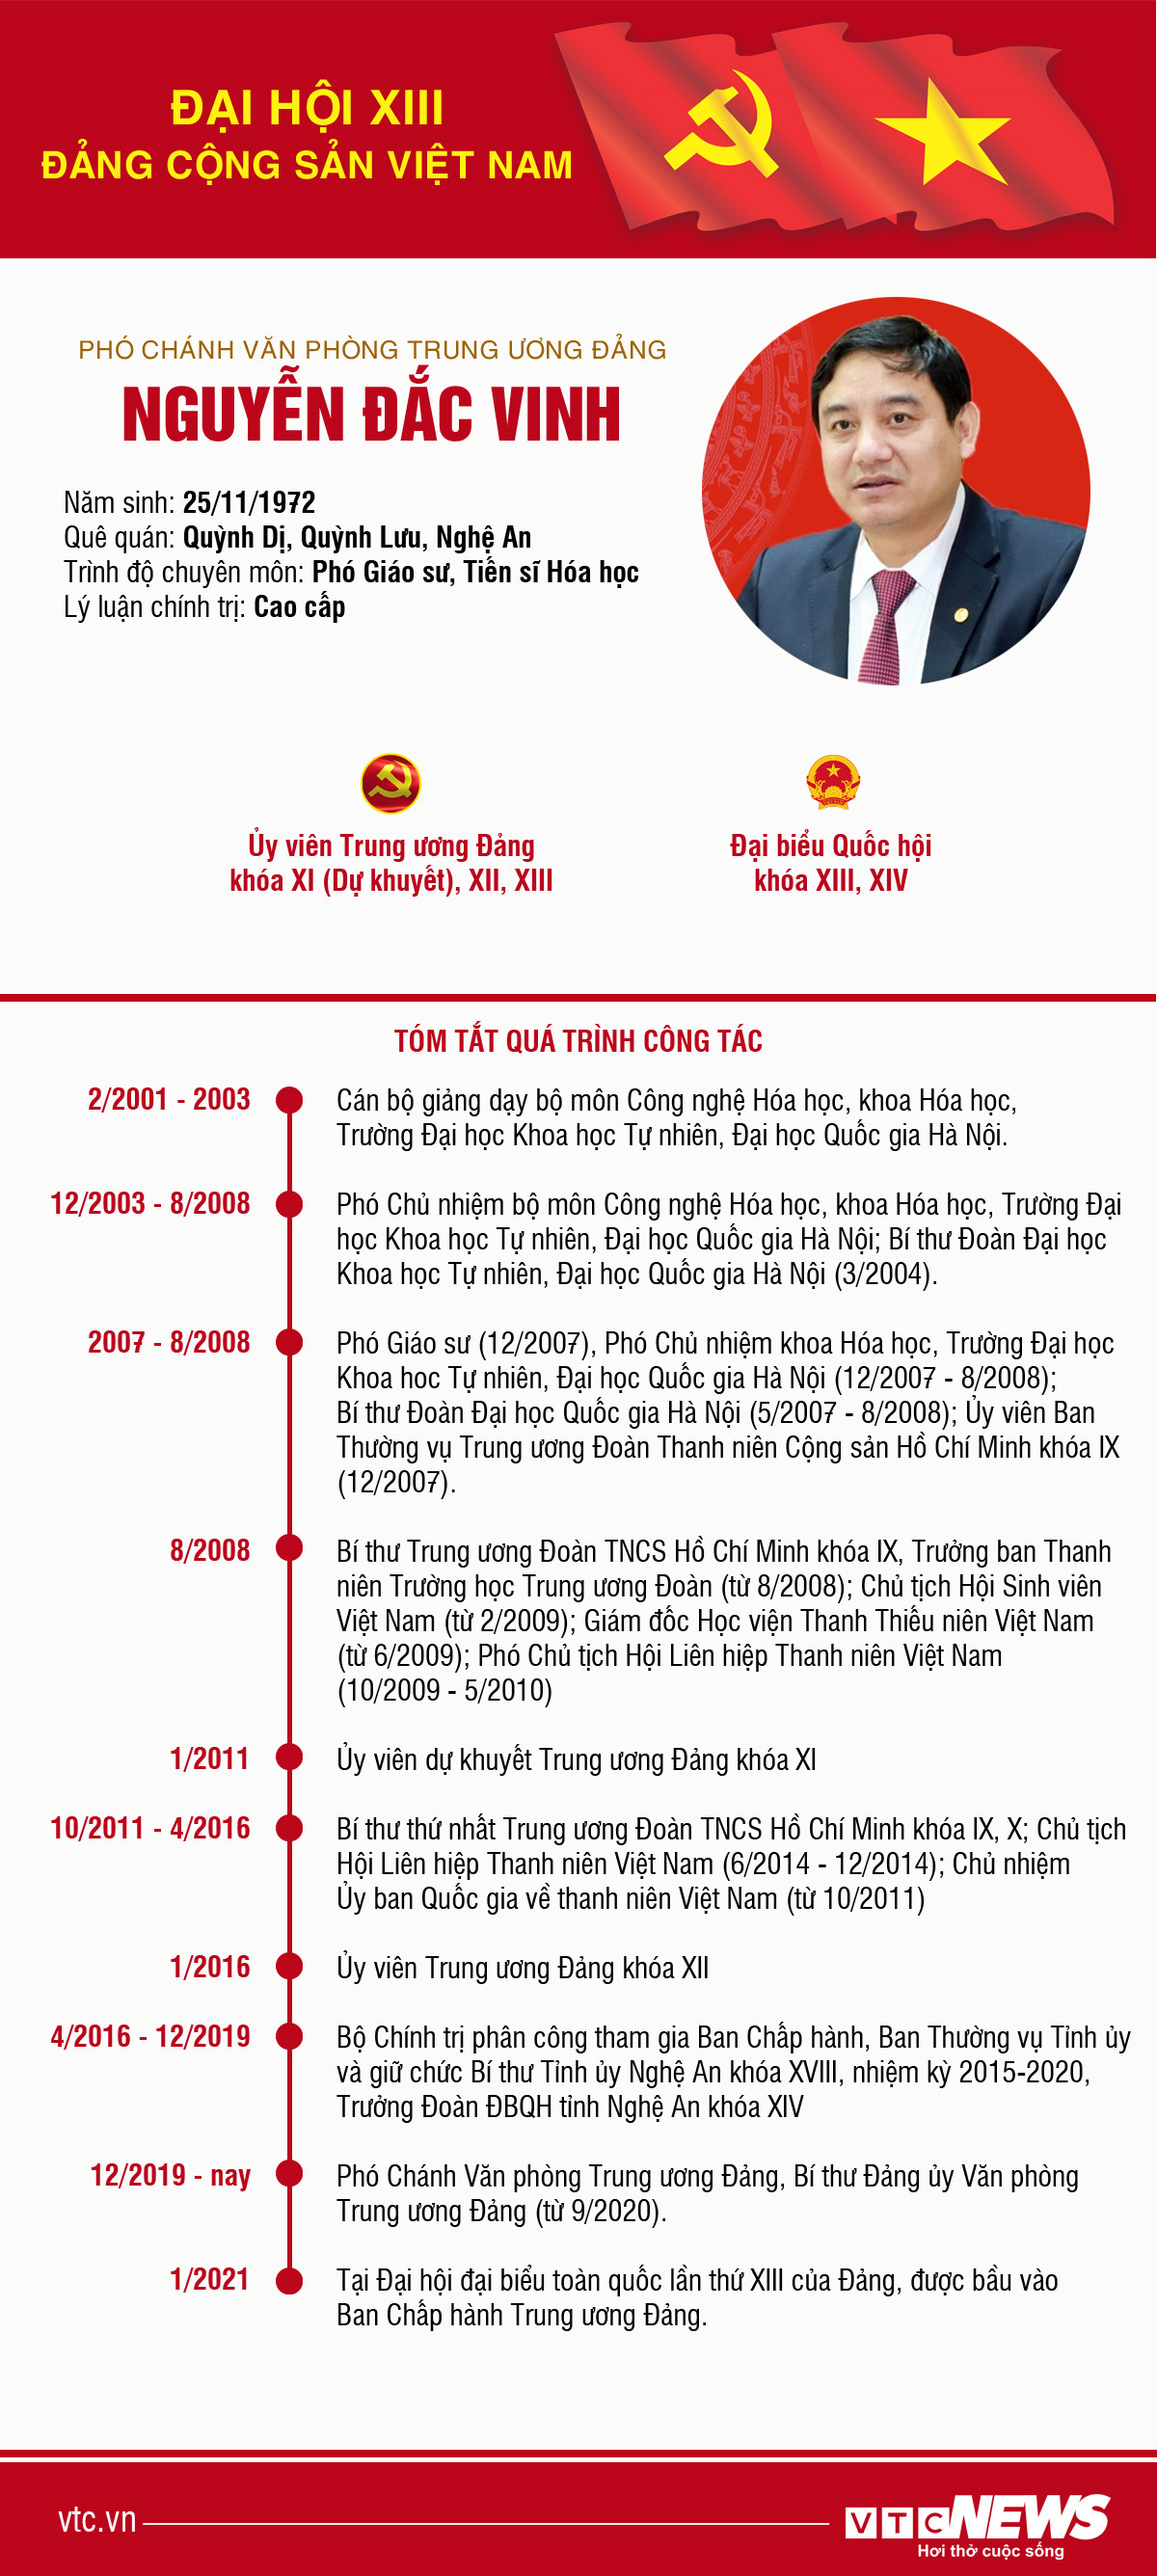 Infographic: Sự nghiệp Phó Chánh Văn phòng Trung ương Đảng Nguyễn Đắc Vinh - 1